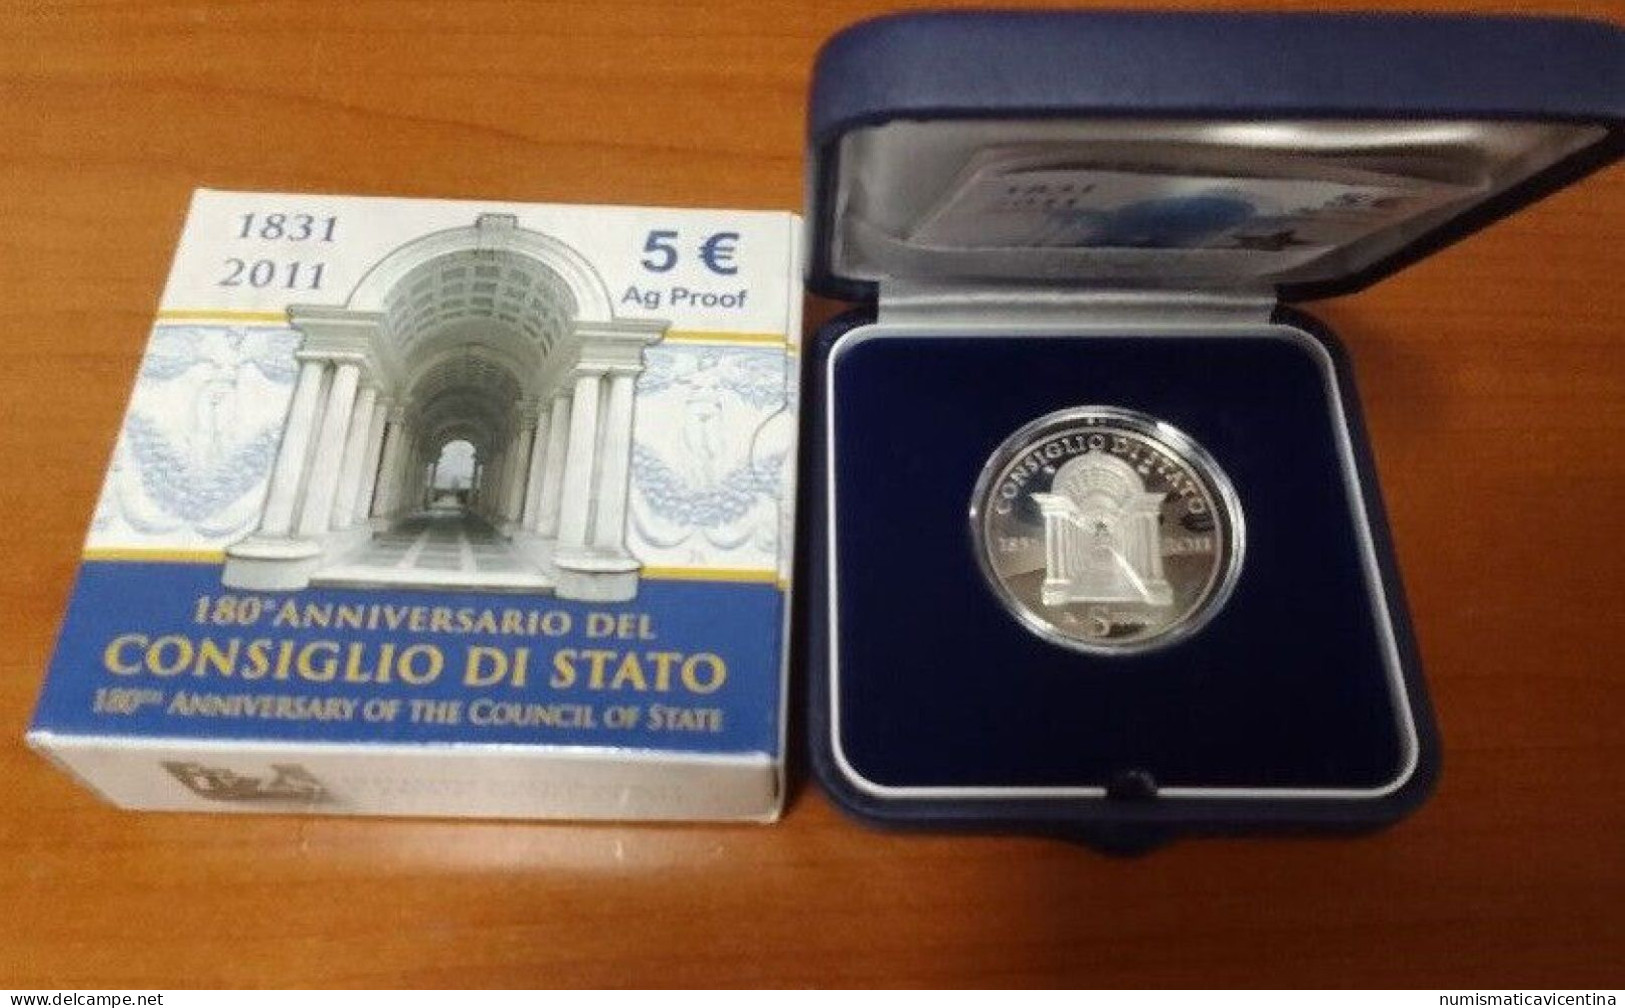 Italia 5 Euro 2011 Consiglio Di Stato 180° Anniversario € Silver Coin UNC PROOF - Italien